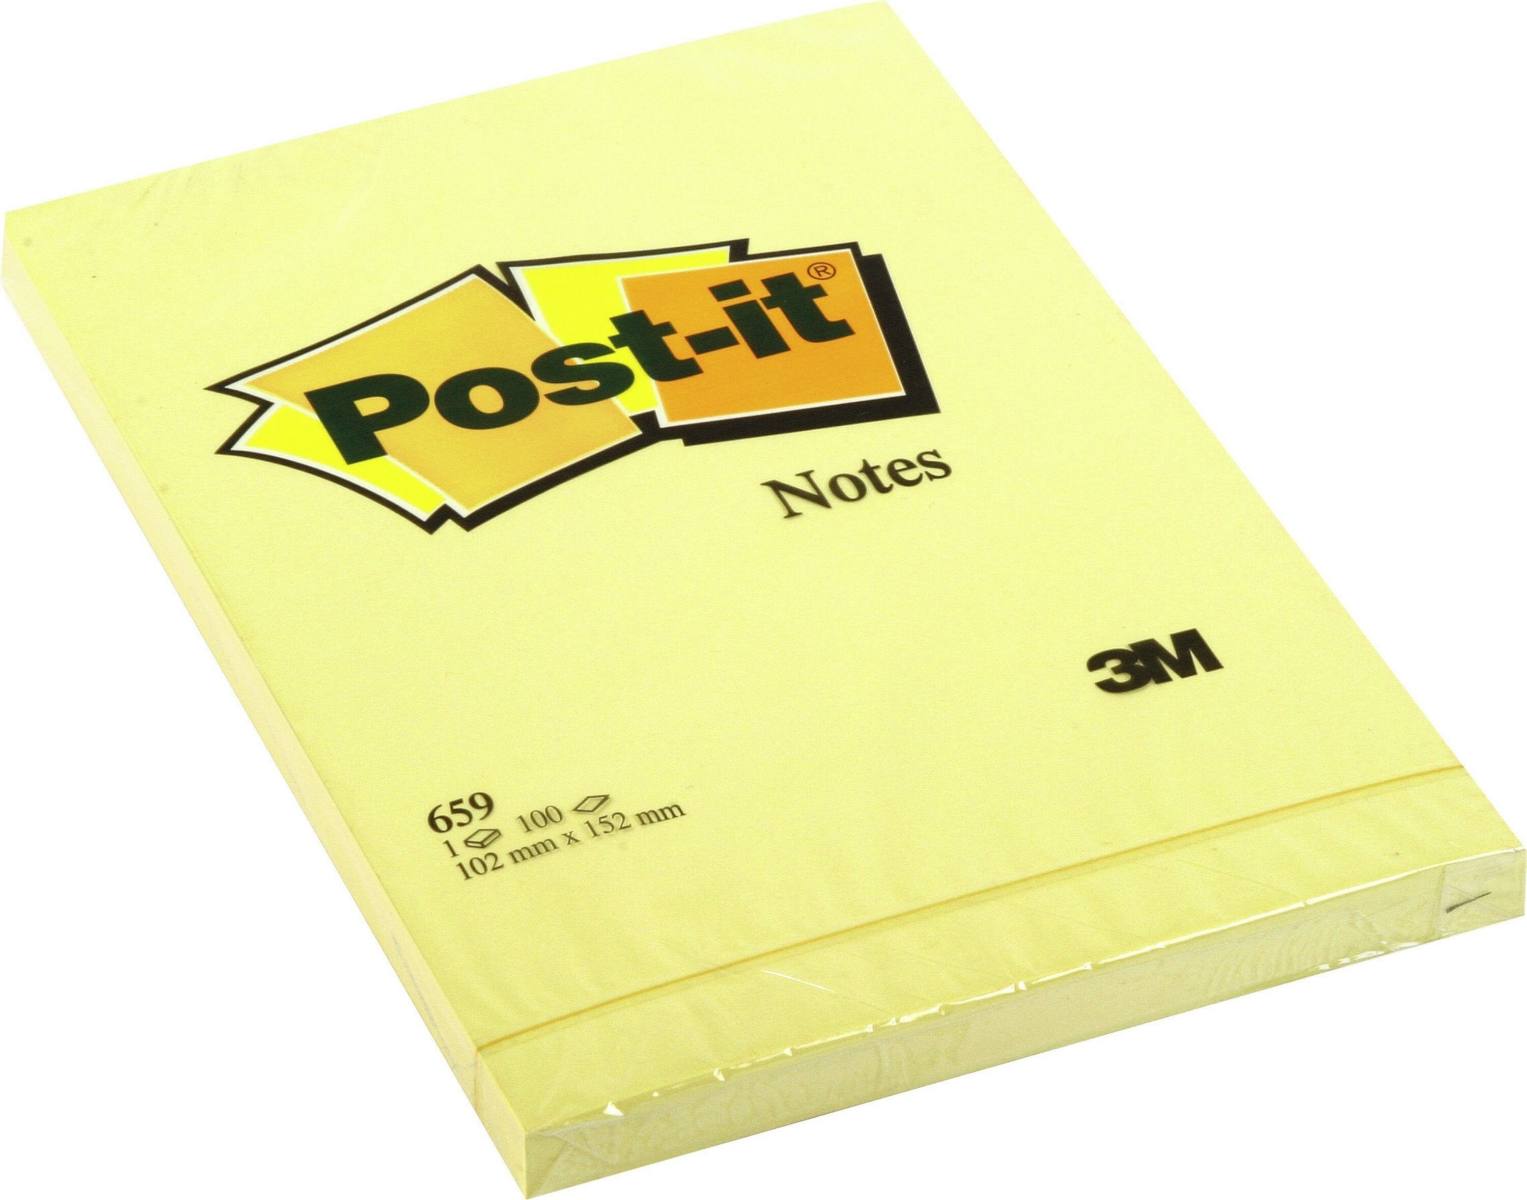 3M Post-it Notes 659, 102 mm x 152 mm, geel, 1 pad van 100 vellen